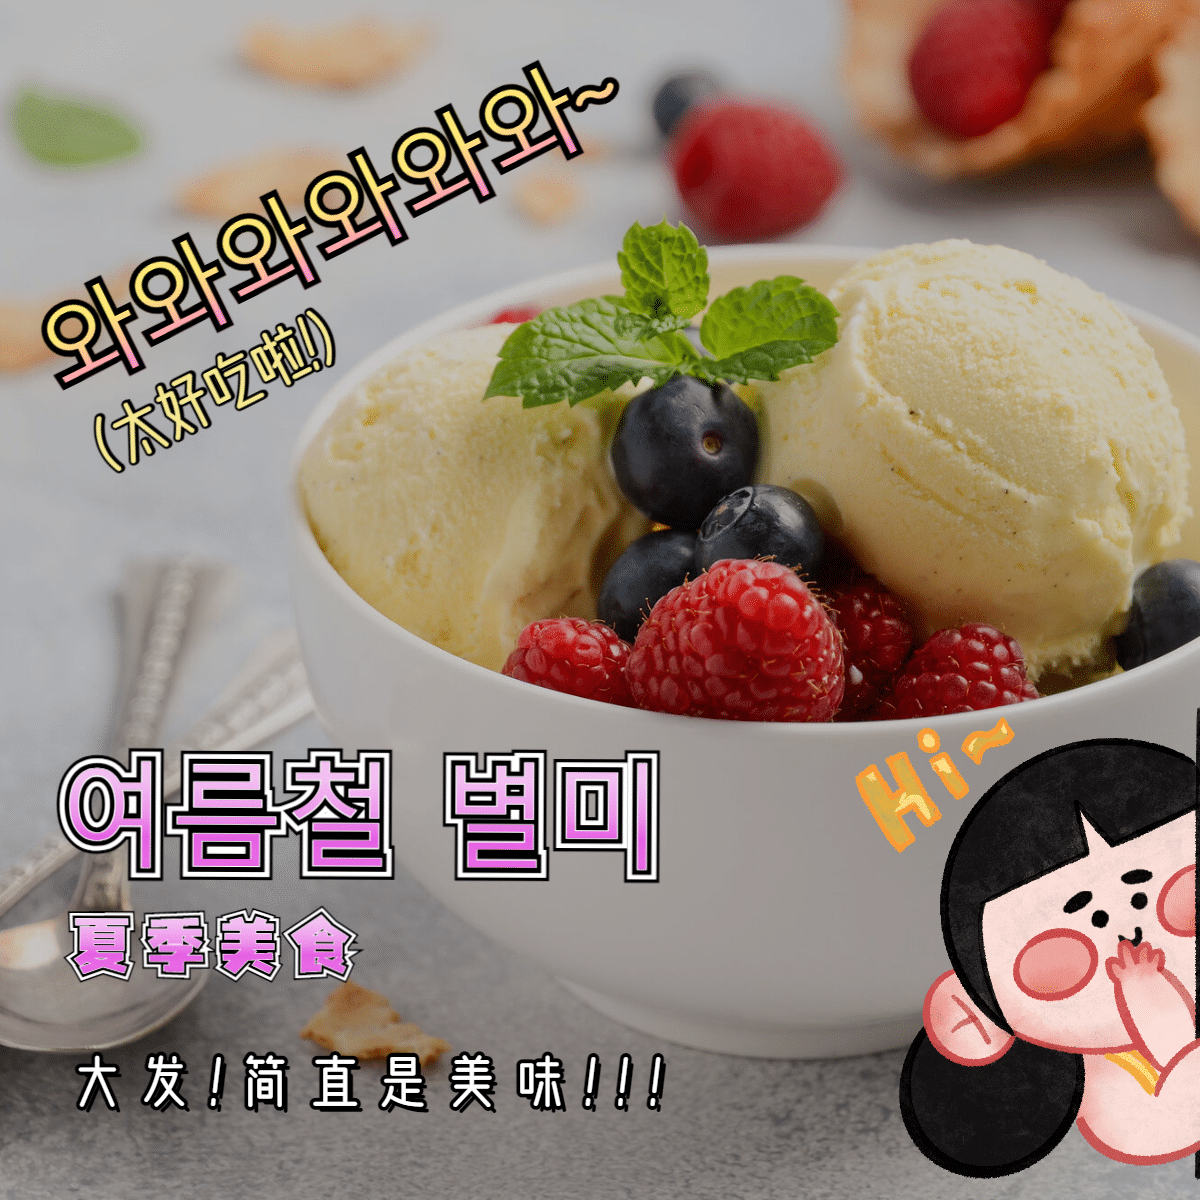 简约卡通韩语美食产品展示预览效果